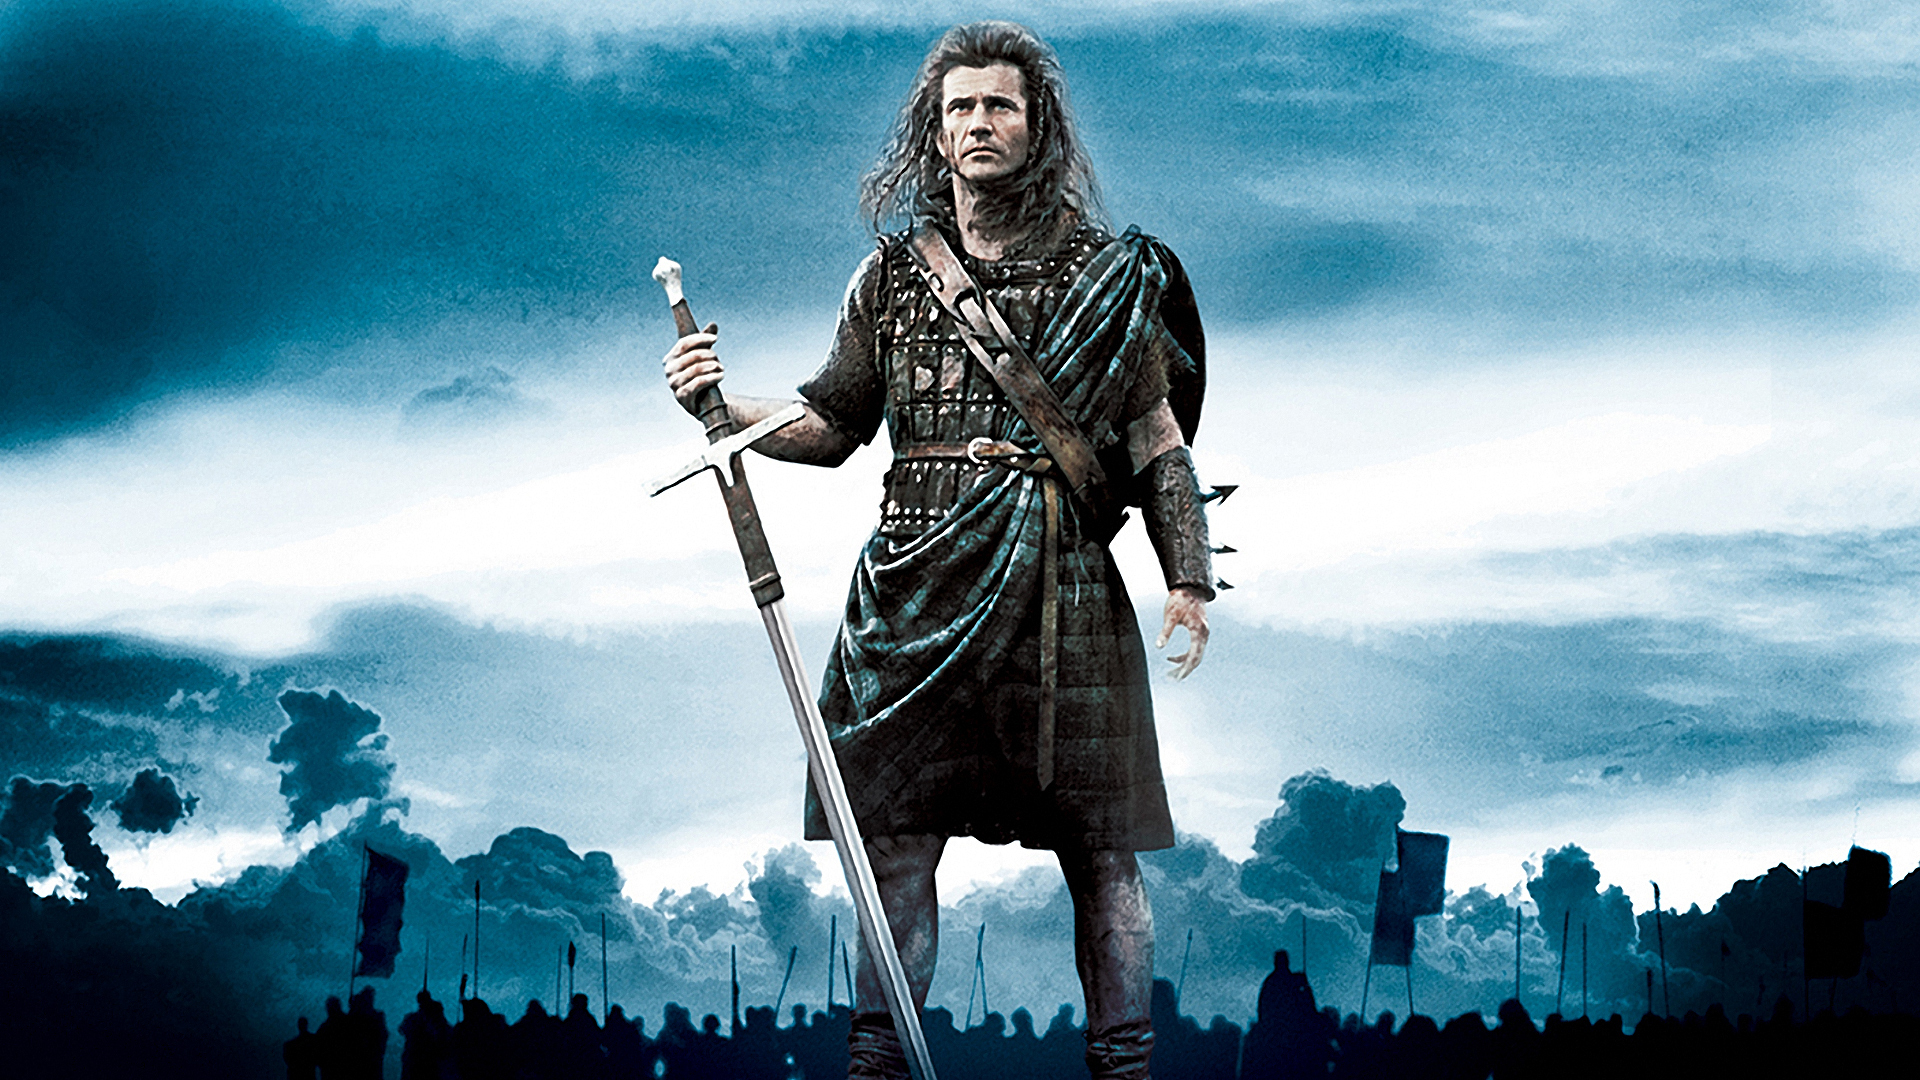 Mel Gibson'ın hem oyuncu hem de yönetmen olduğu film, ünlü İskoç halk kahramanı William Wallace'ın hayatını anlatmaktadır.